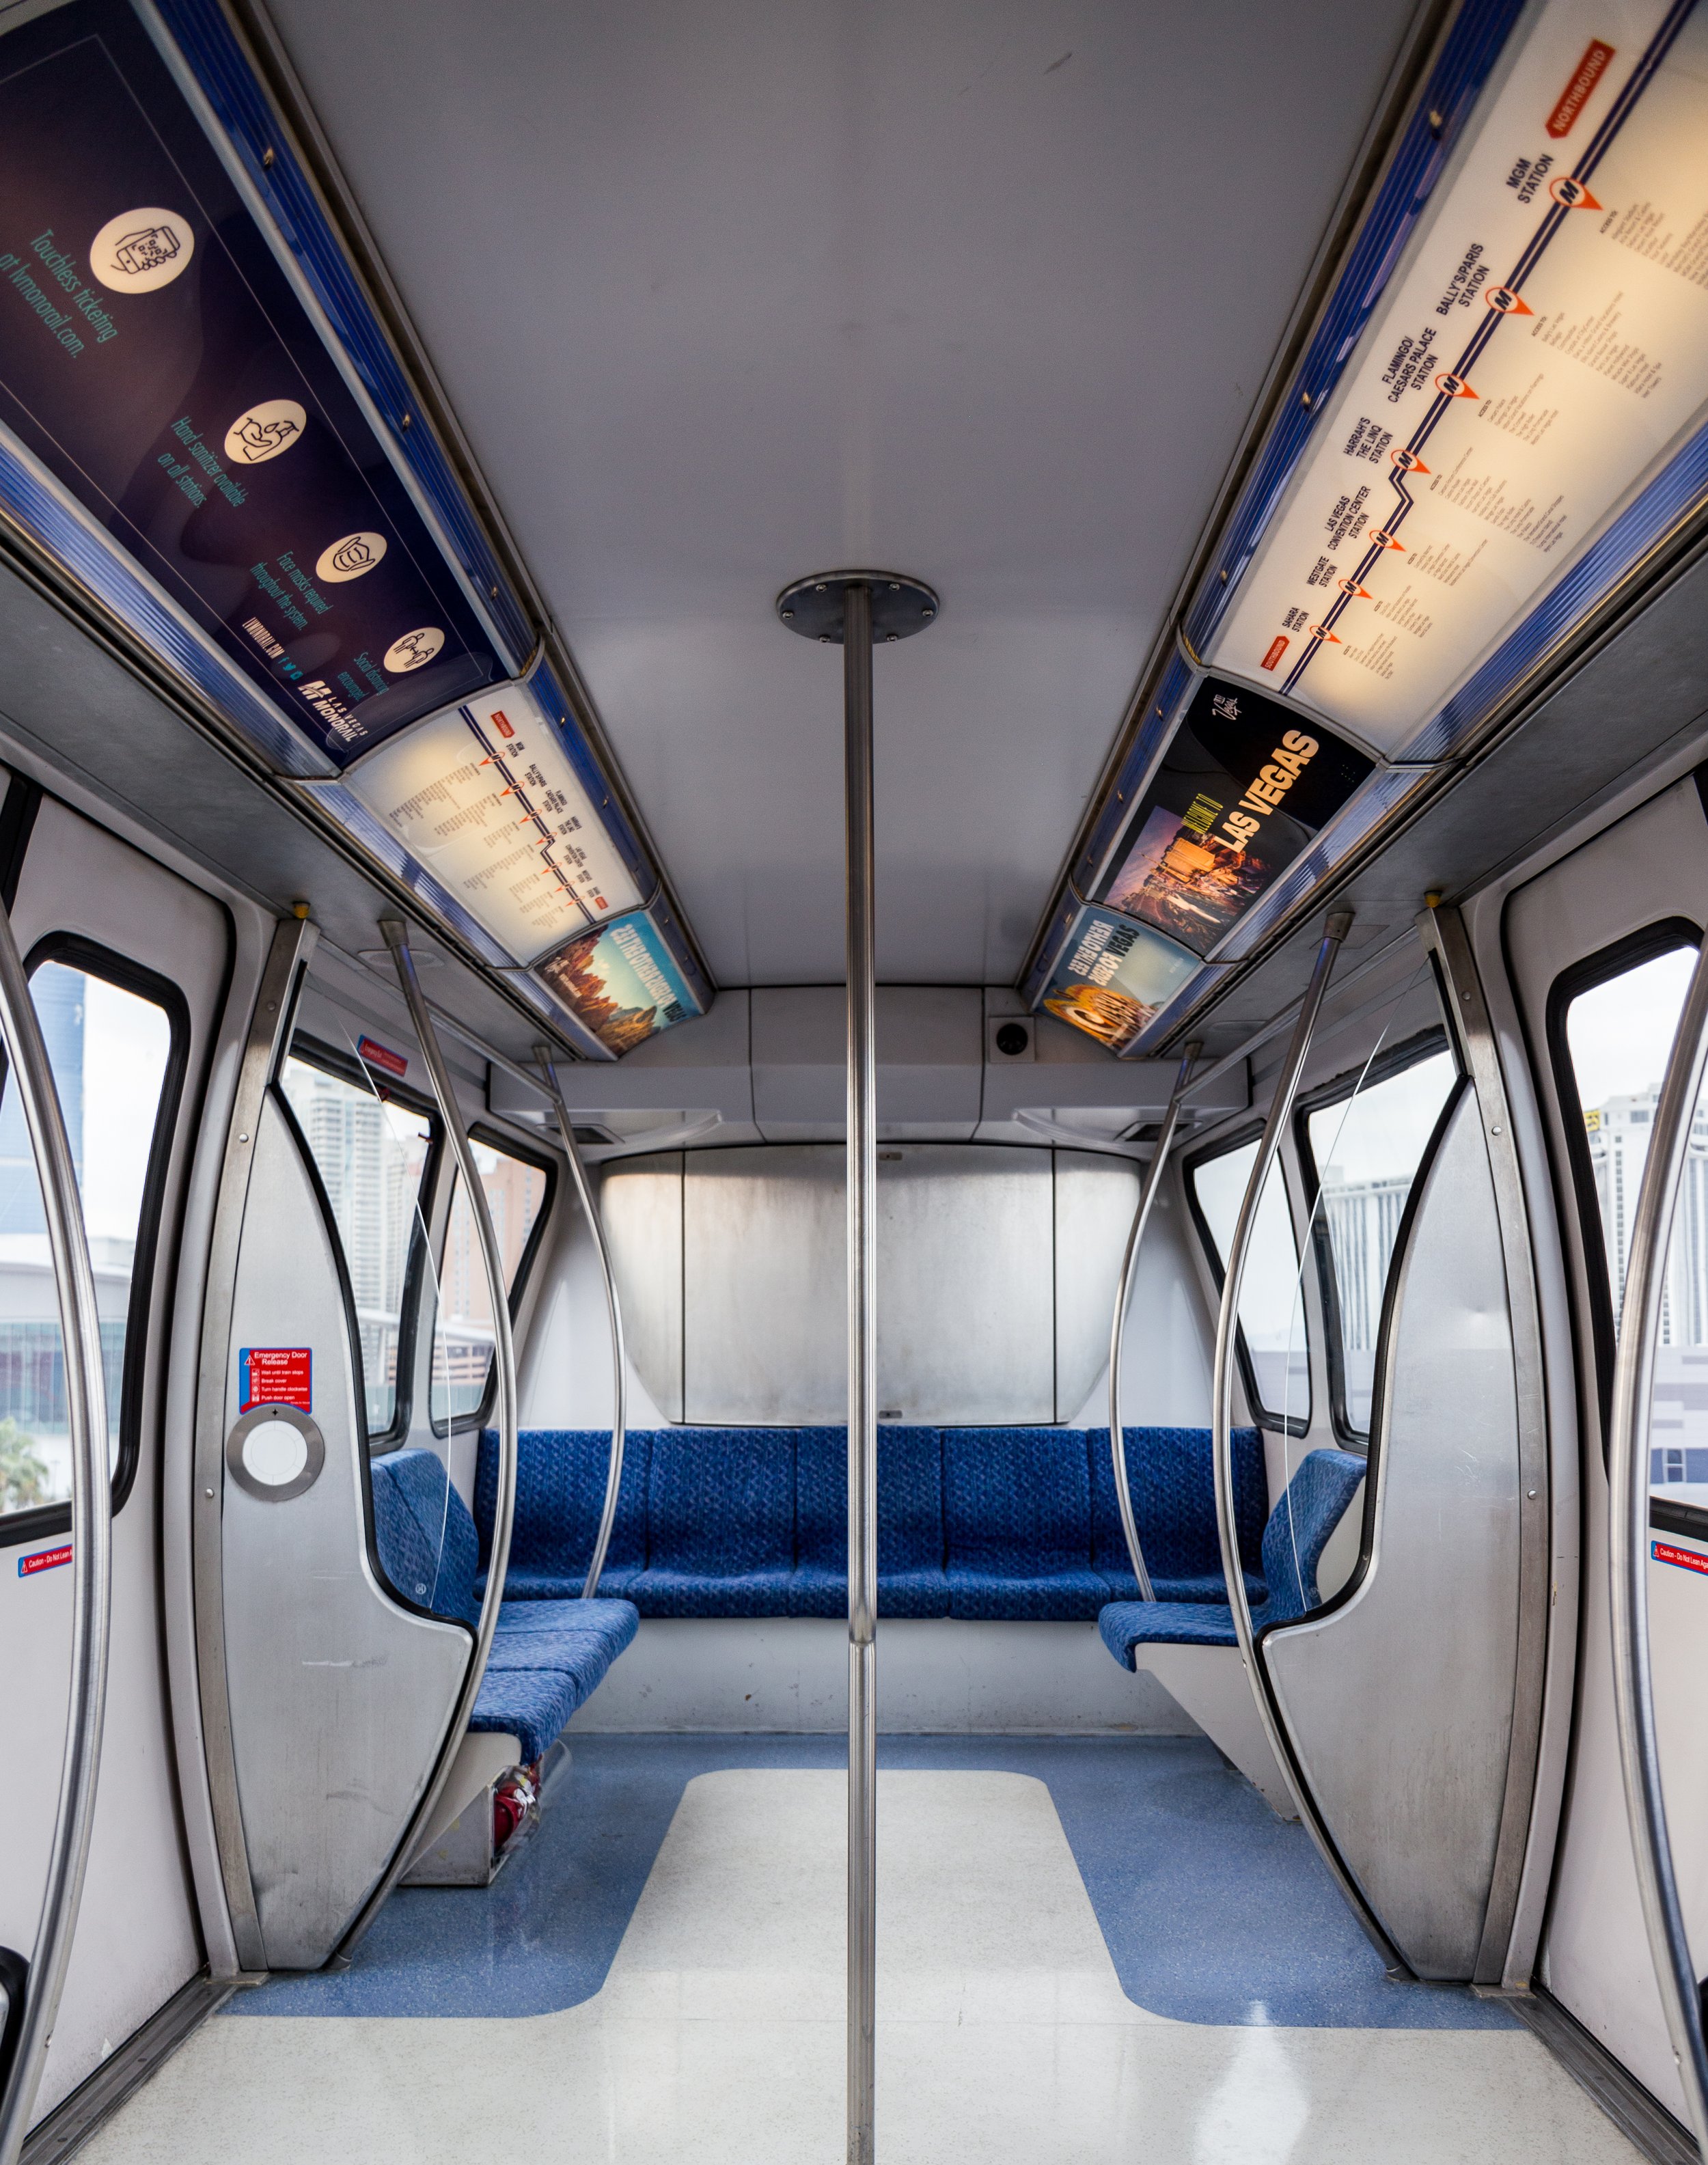 LAS_Monorail_Brand_Train.jpg